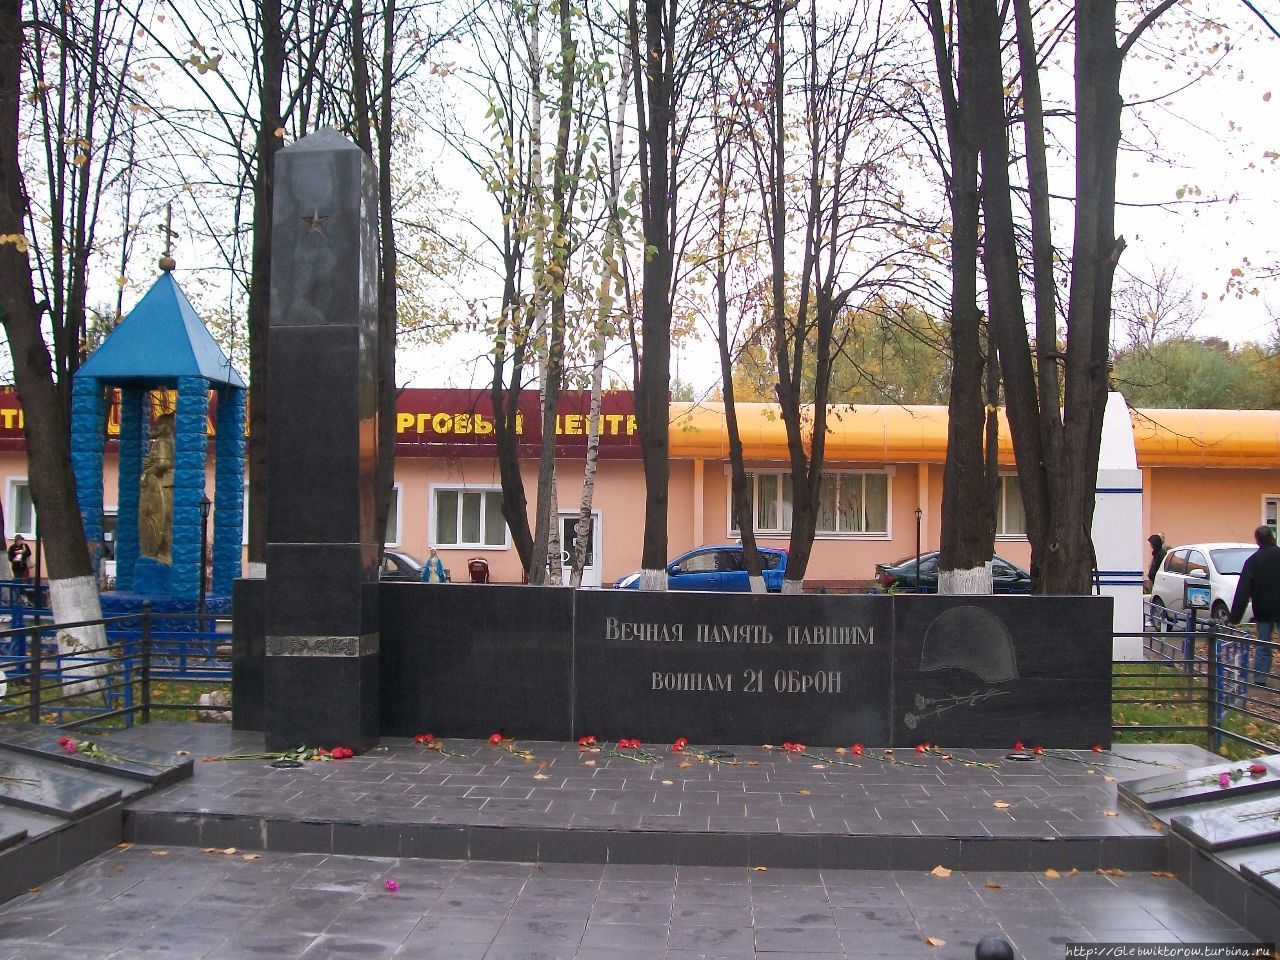 Парк памяти военнослужащих софринской бригады / Memory park